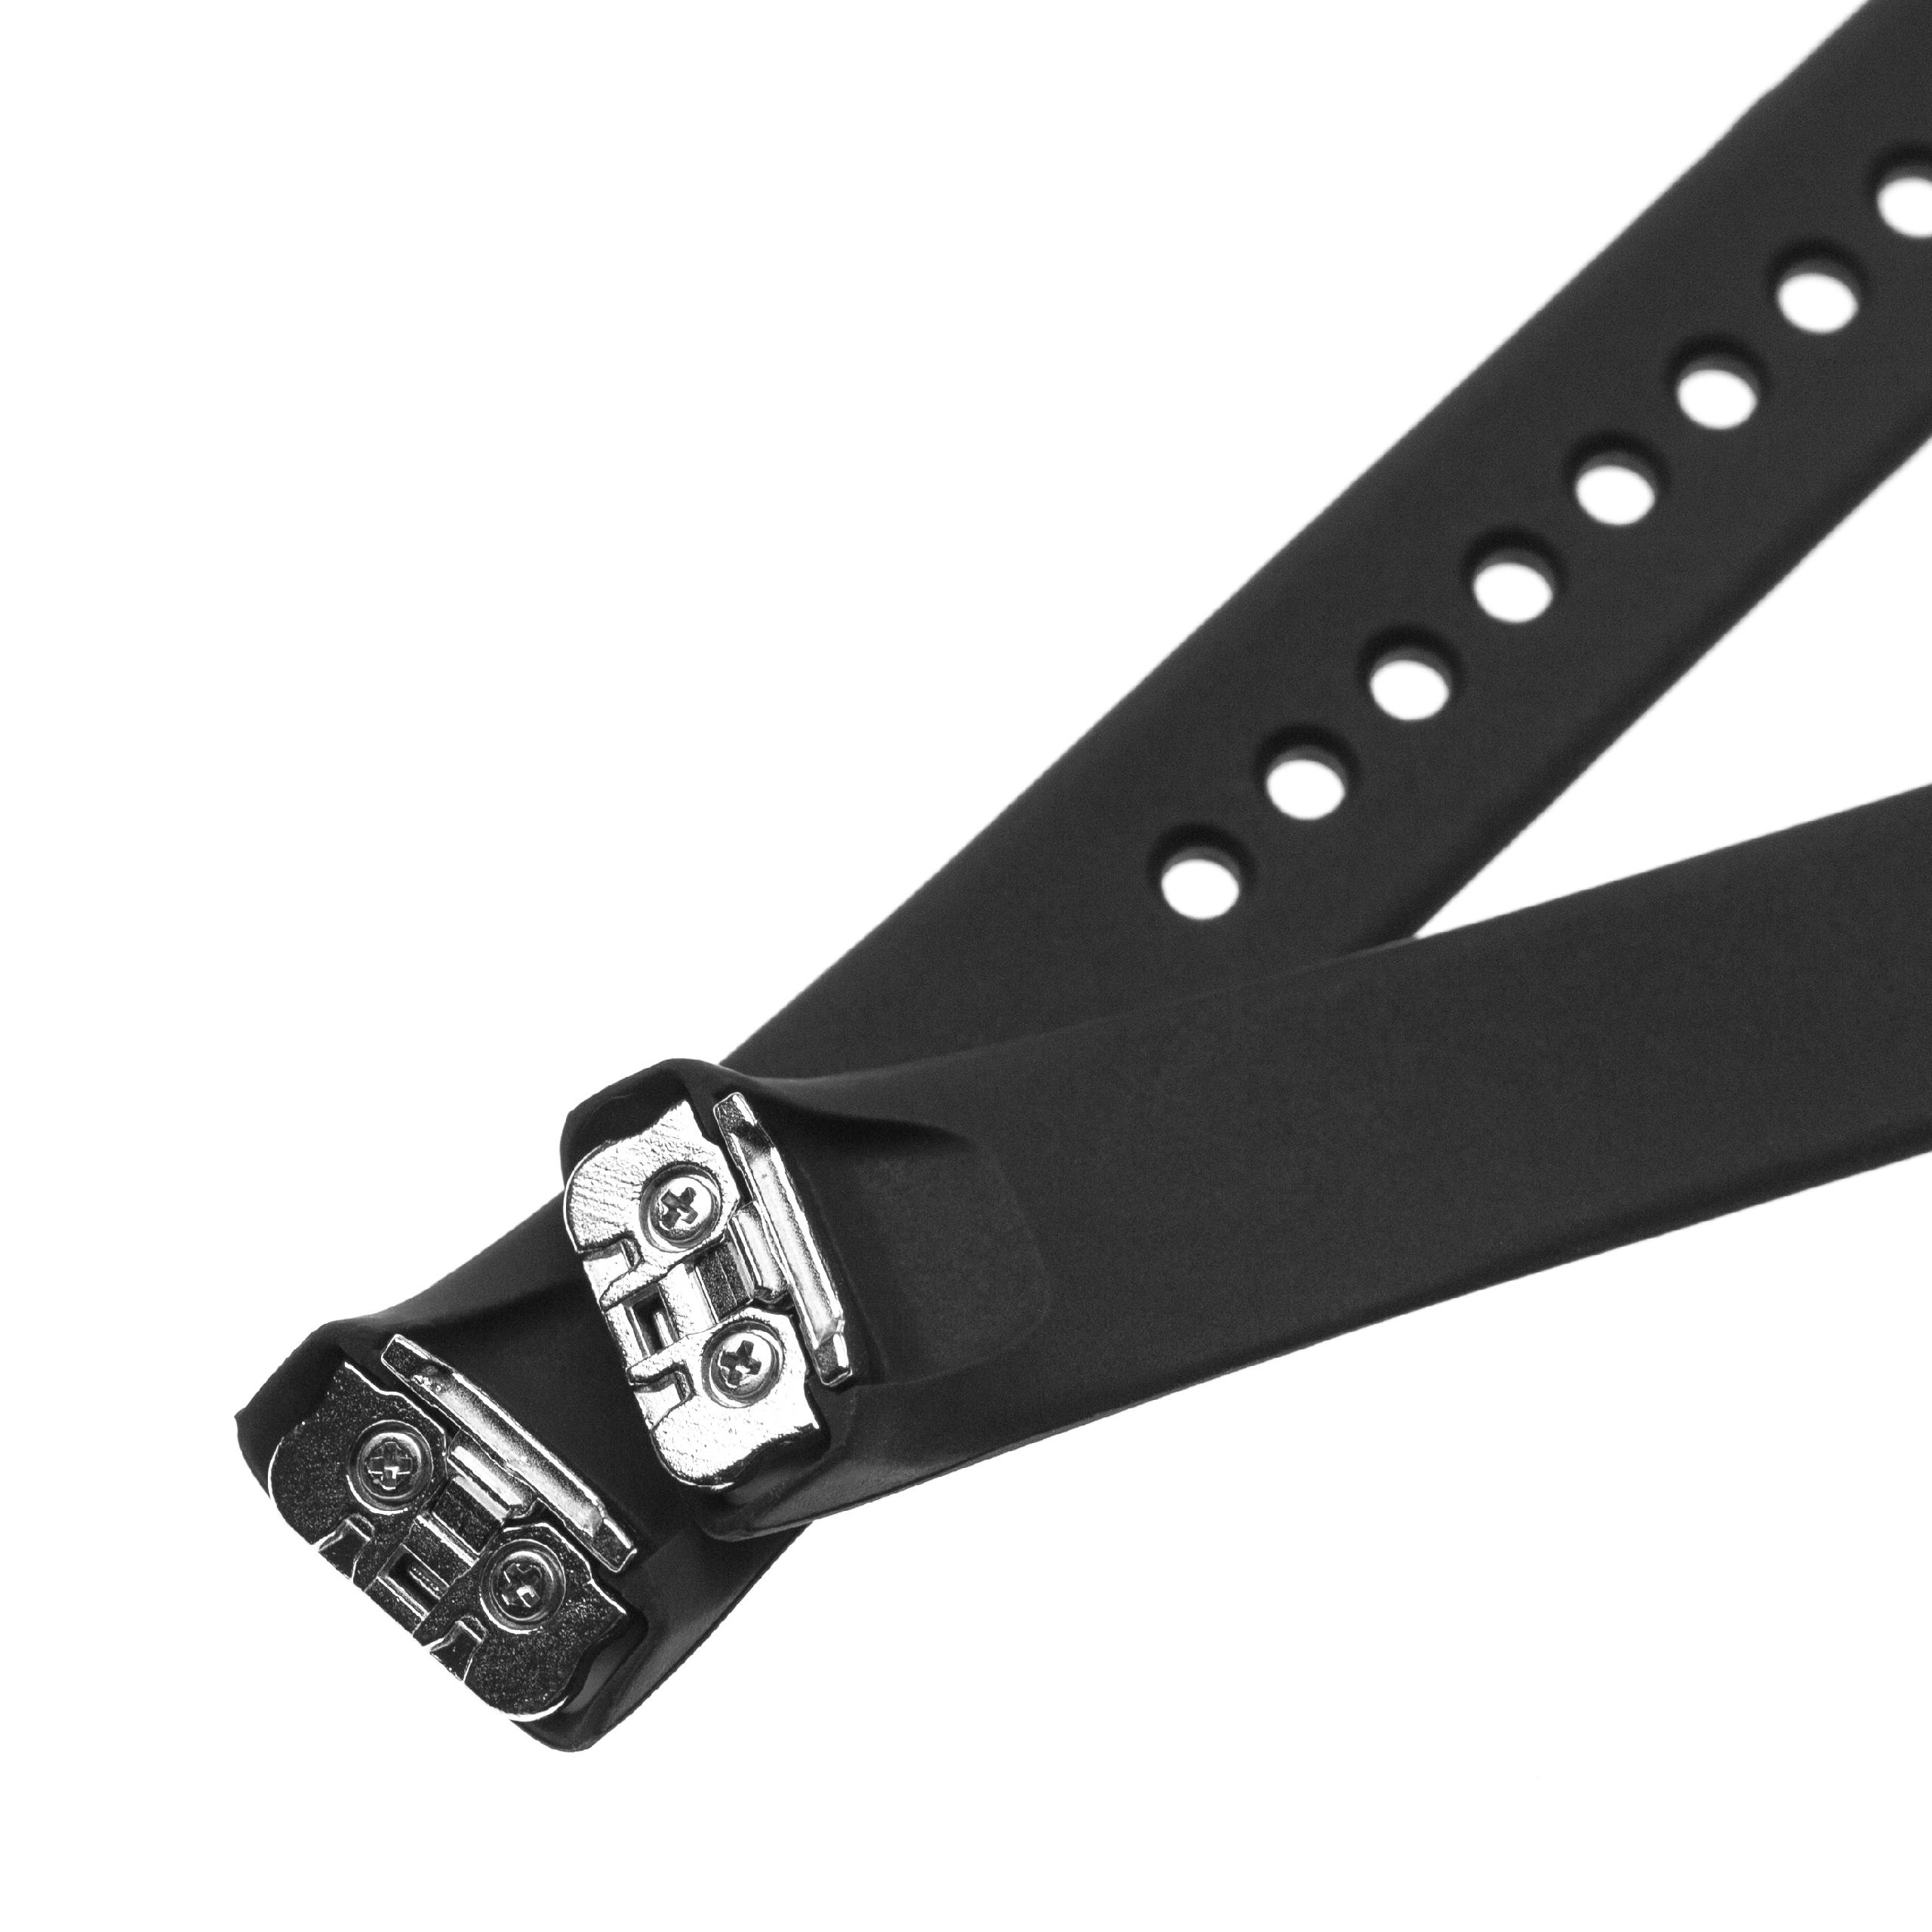 Armband für Samsung Galaxy Fit Smartwatch - 11,5 + 8,9 cm lang, 17mm breit, Silikon, schwarz